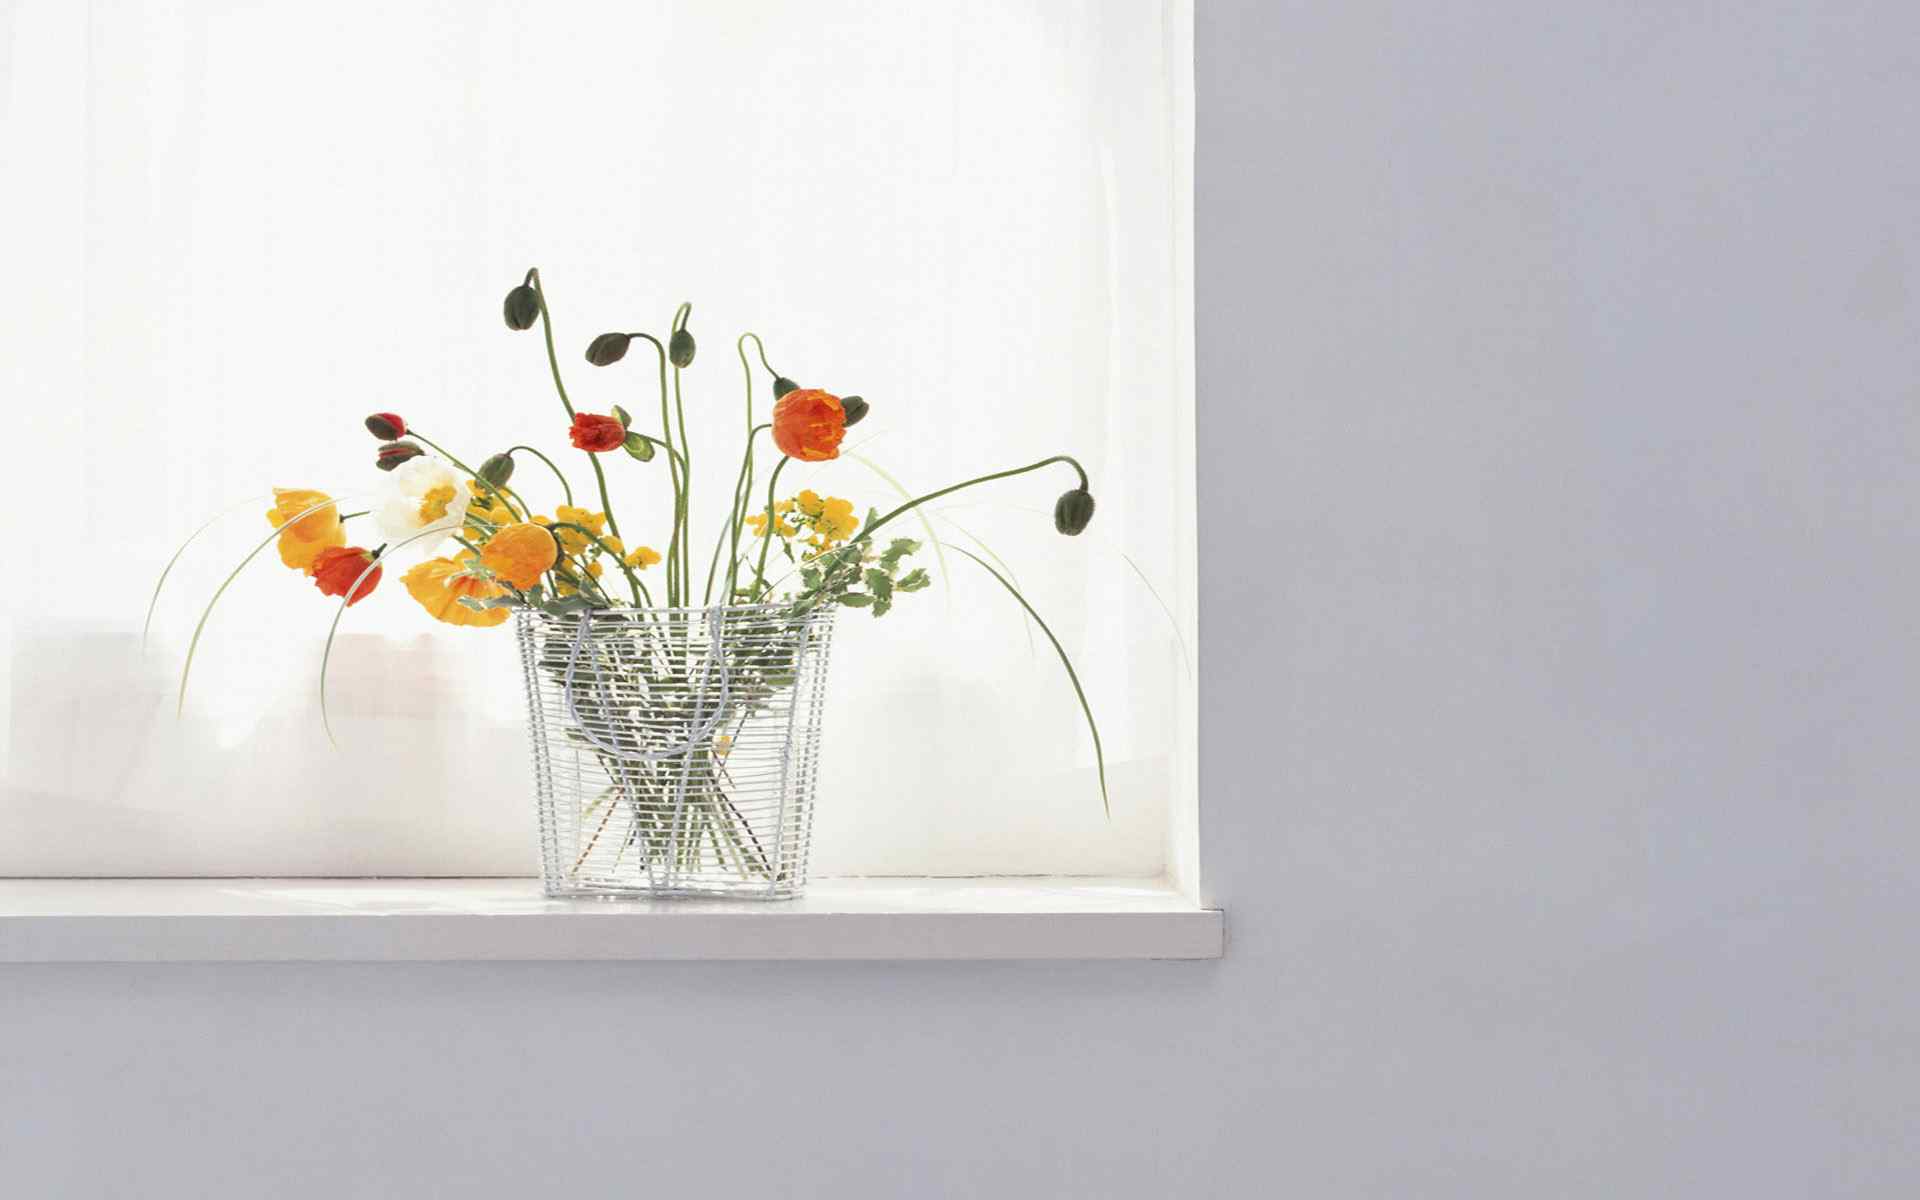 简约清新的室内植物花卉摄影图片高清壁纸